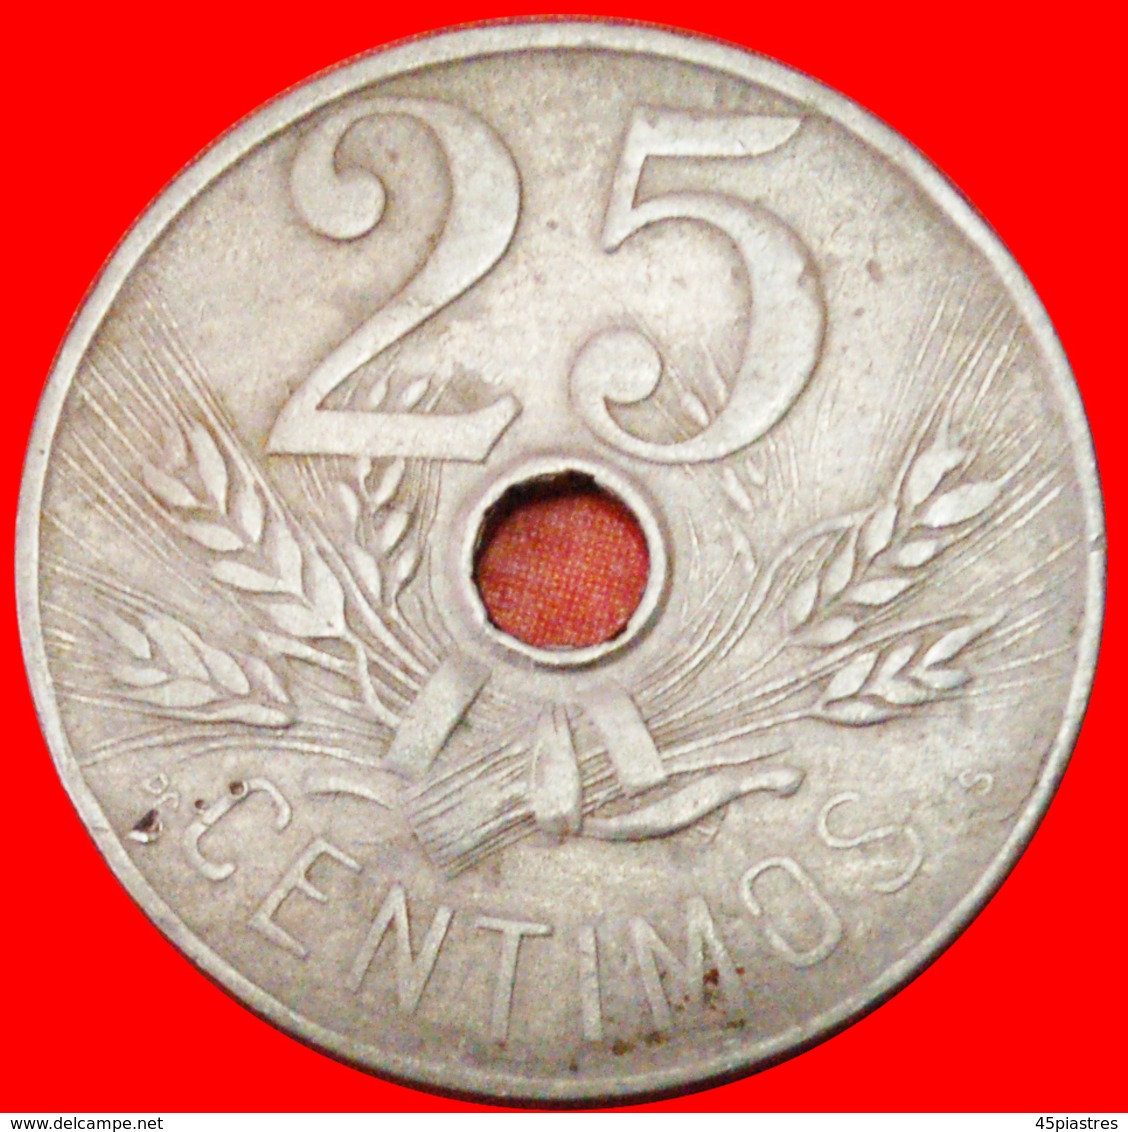 # HAMMER: SPAIN ★ 25 CENTIMOS 1927! LOW START ★ NO RESERVE! Alfonso XIII (1886-1931) - Test- Und Nachprägungen